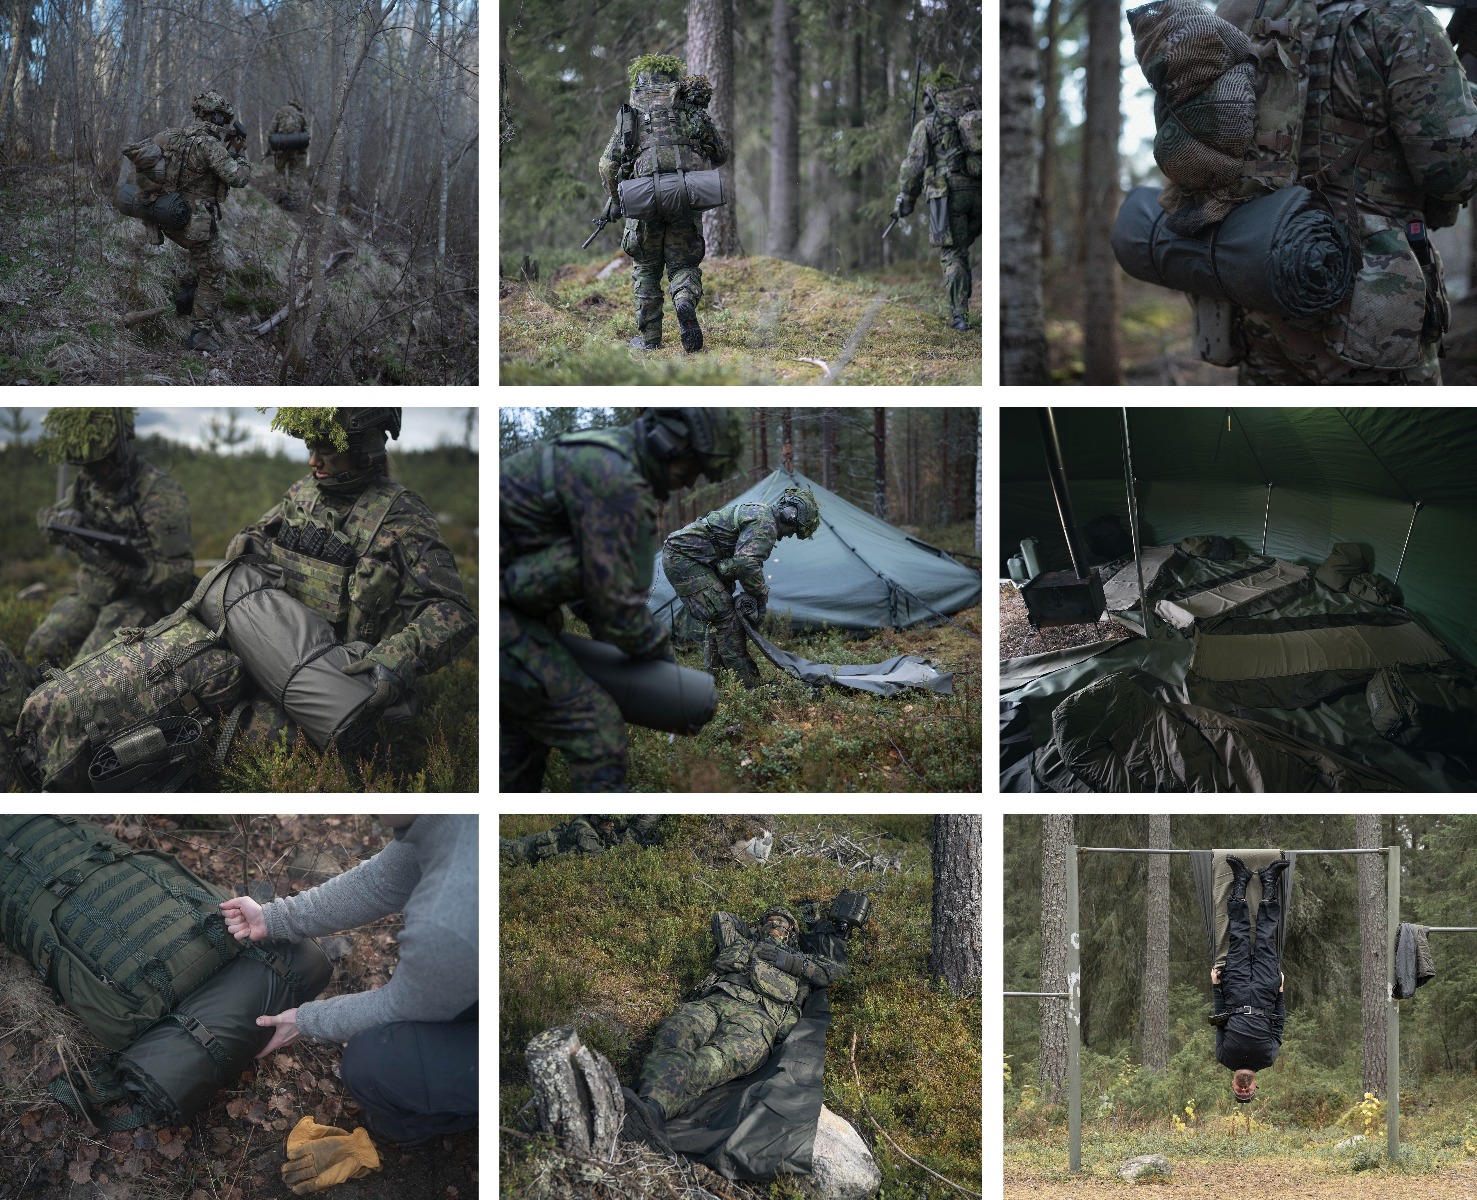 Izkusite udoben spanec na prostem s vojaško podlogo za spanje finskih obrambnih sil Savotta. Vrhunska kakovost, odpornost na vreme in praktičnost za avanturiste, kampiranje in aktivnosti na prostem.